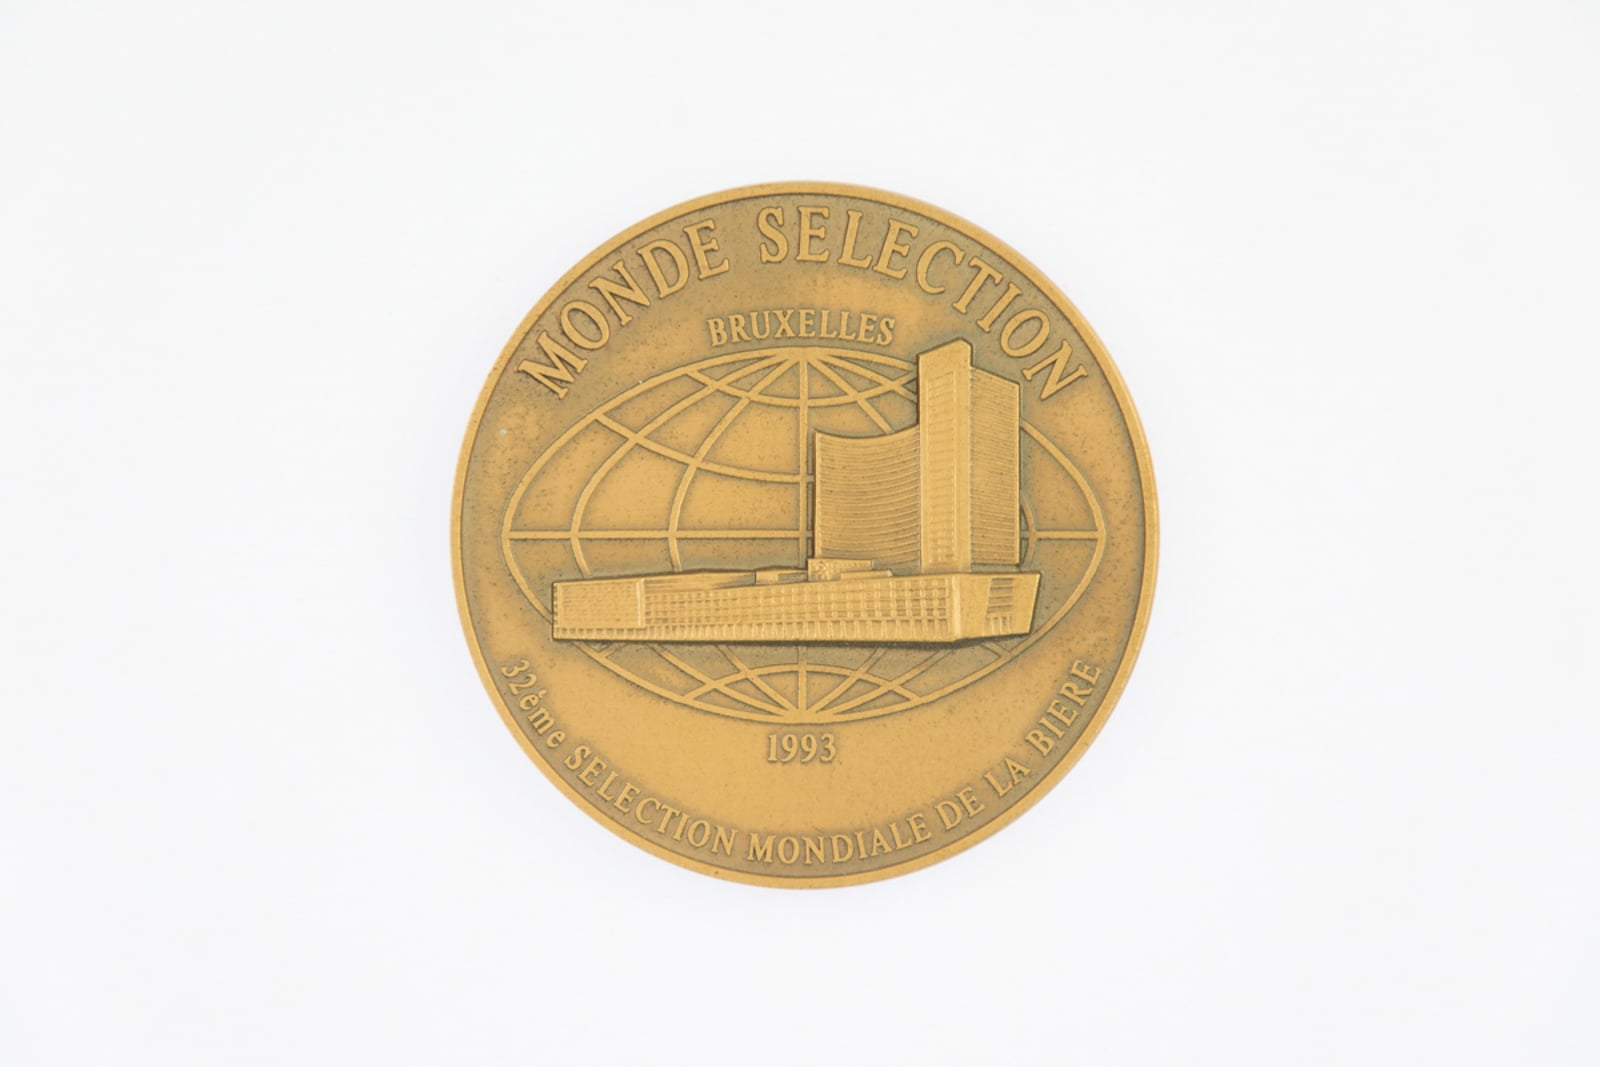 Monde Selection Bruxelles Medaille de Bronze 1993